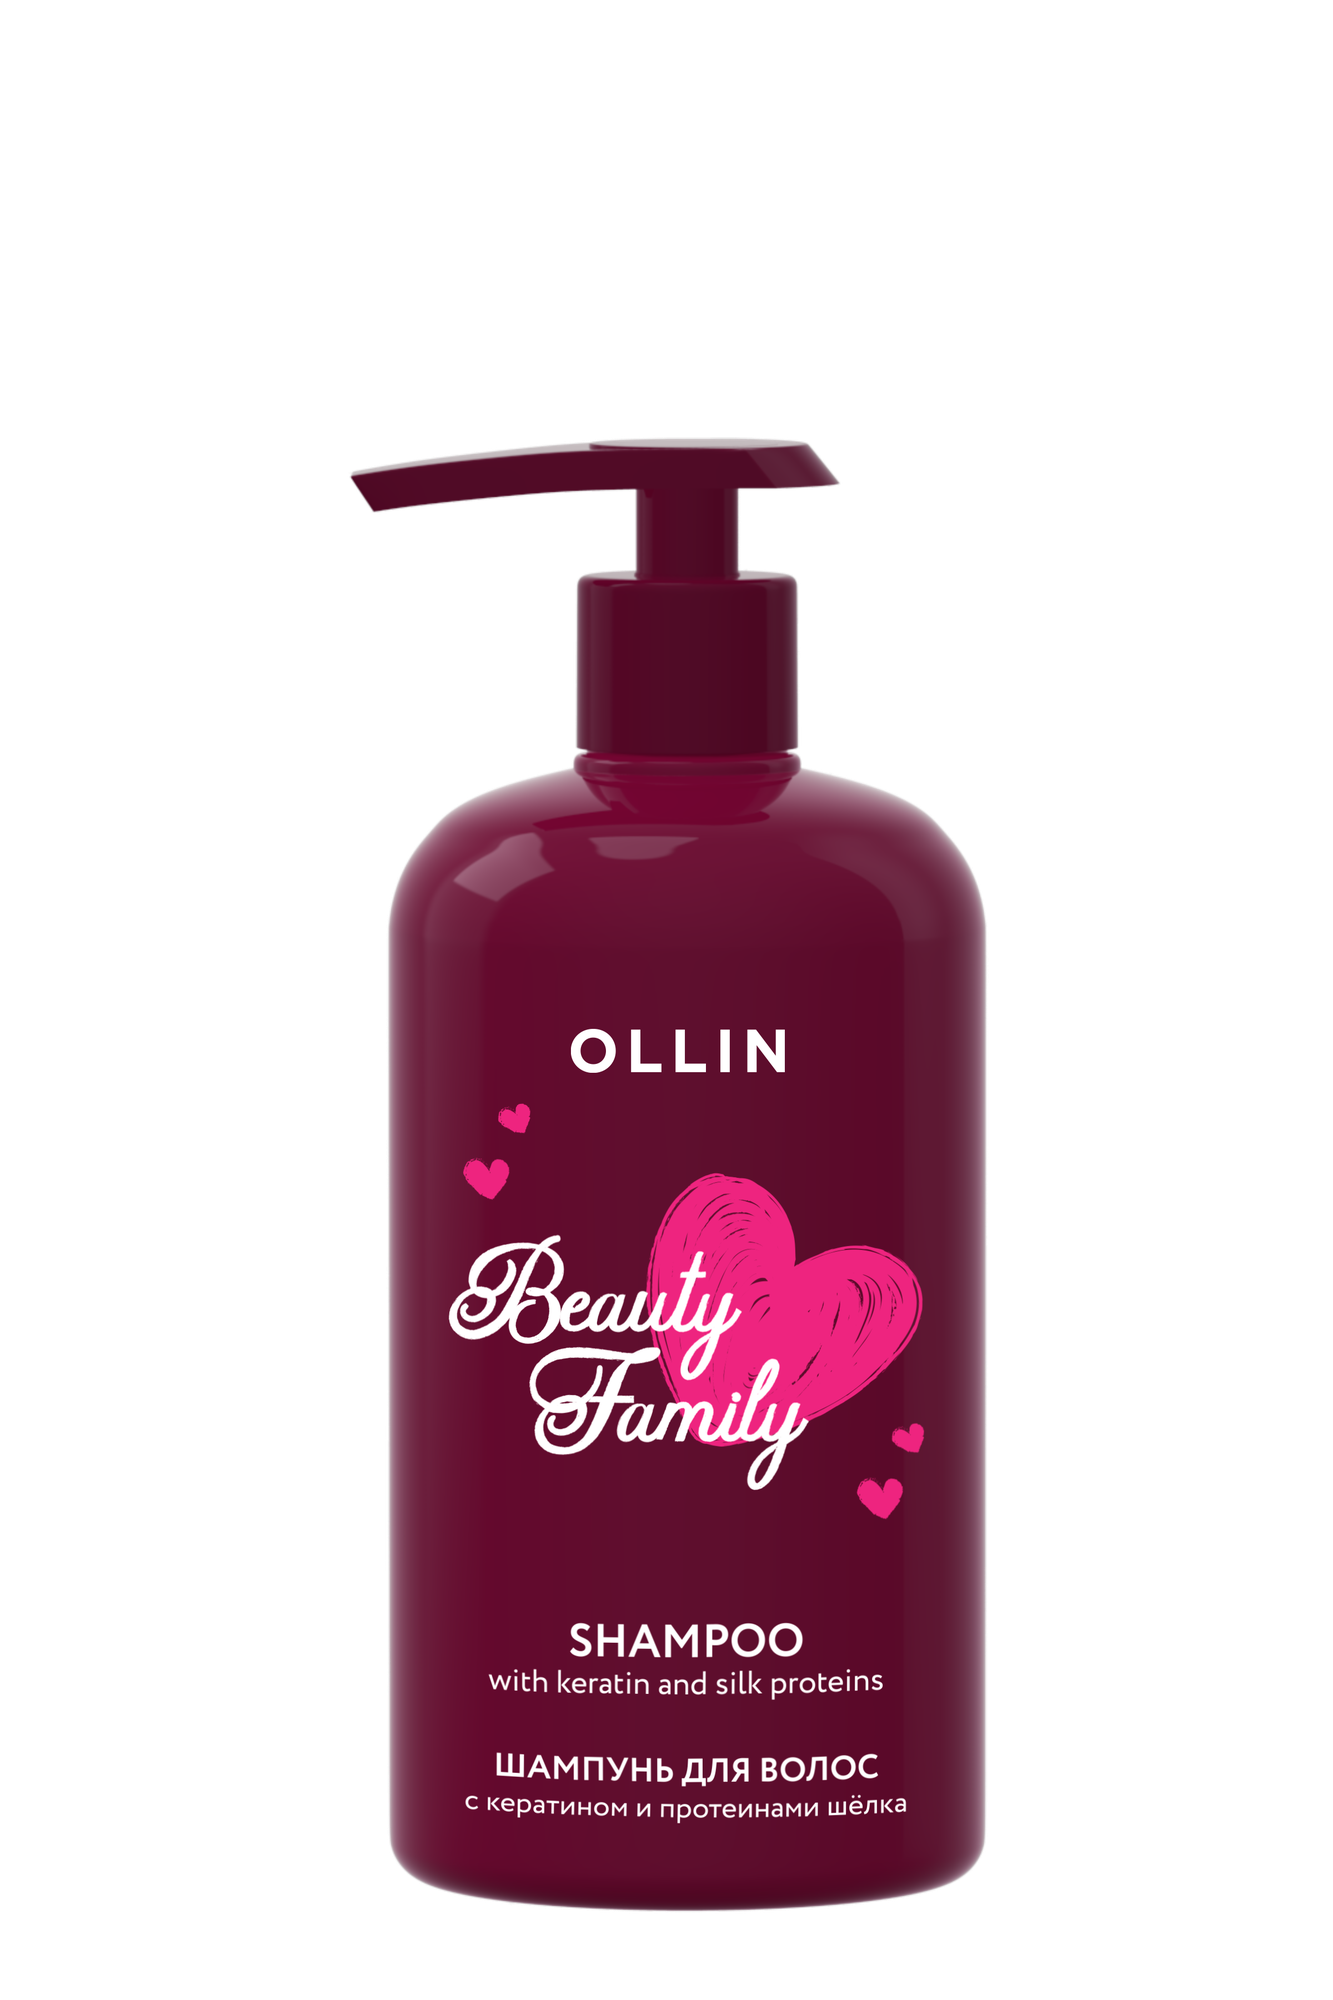 Шампунь для волос Ollin Beauty Family с кератином и протеинами шелка 500мл - фото №6